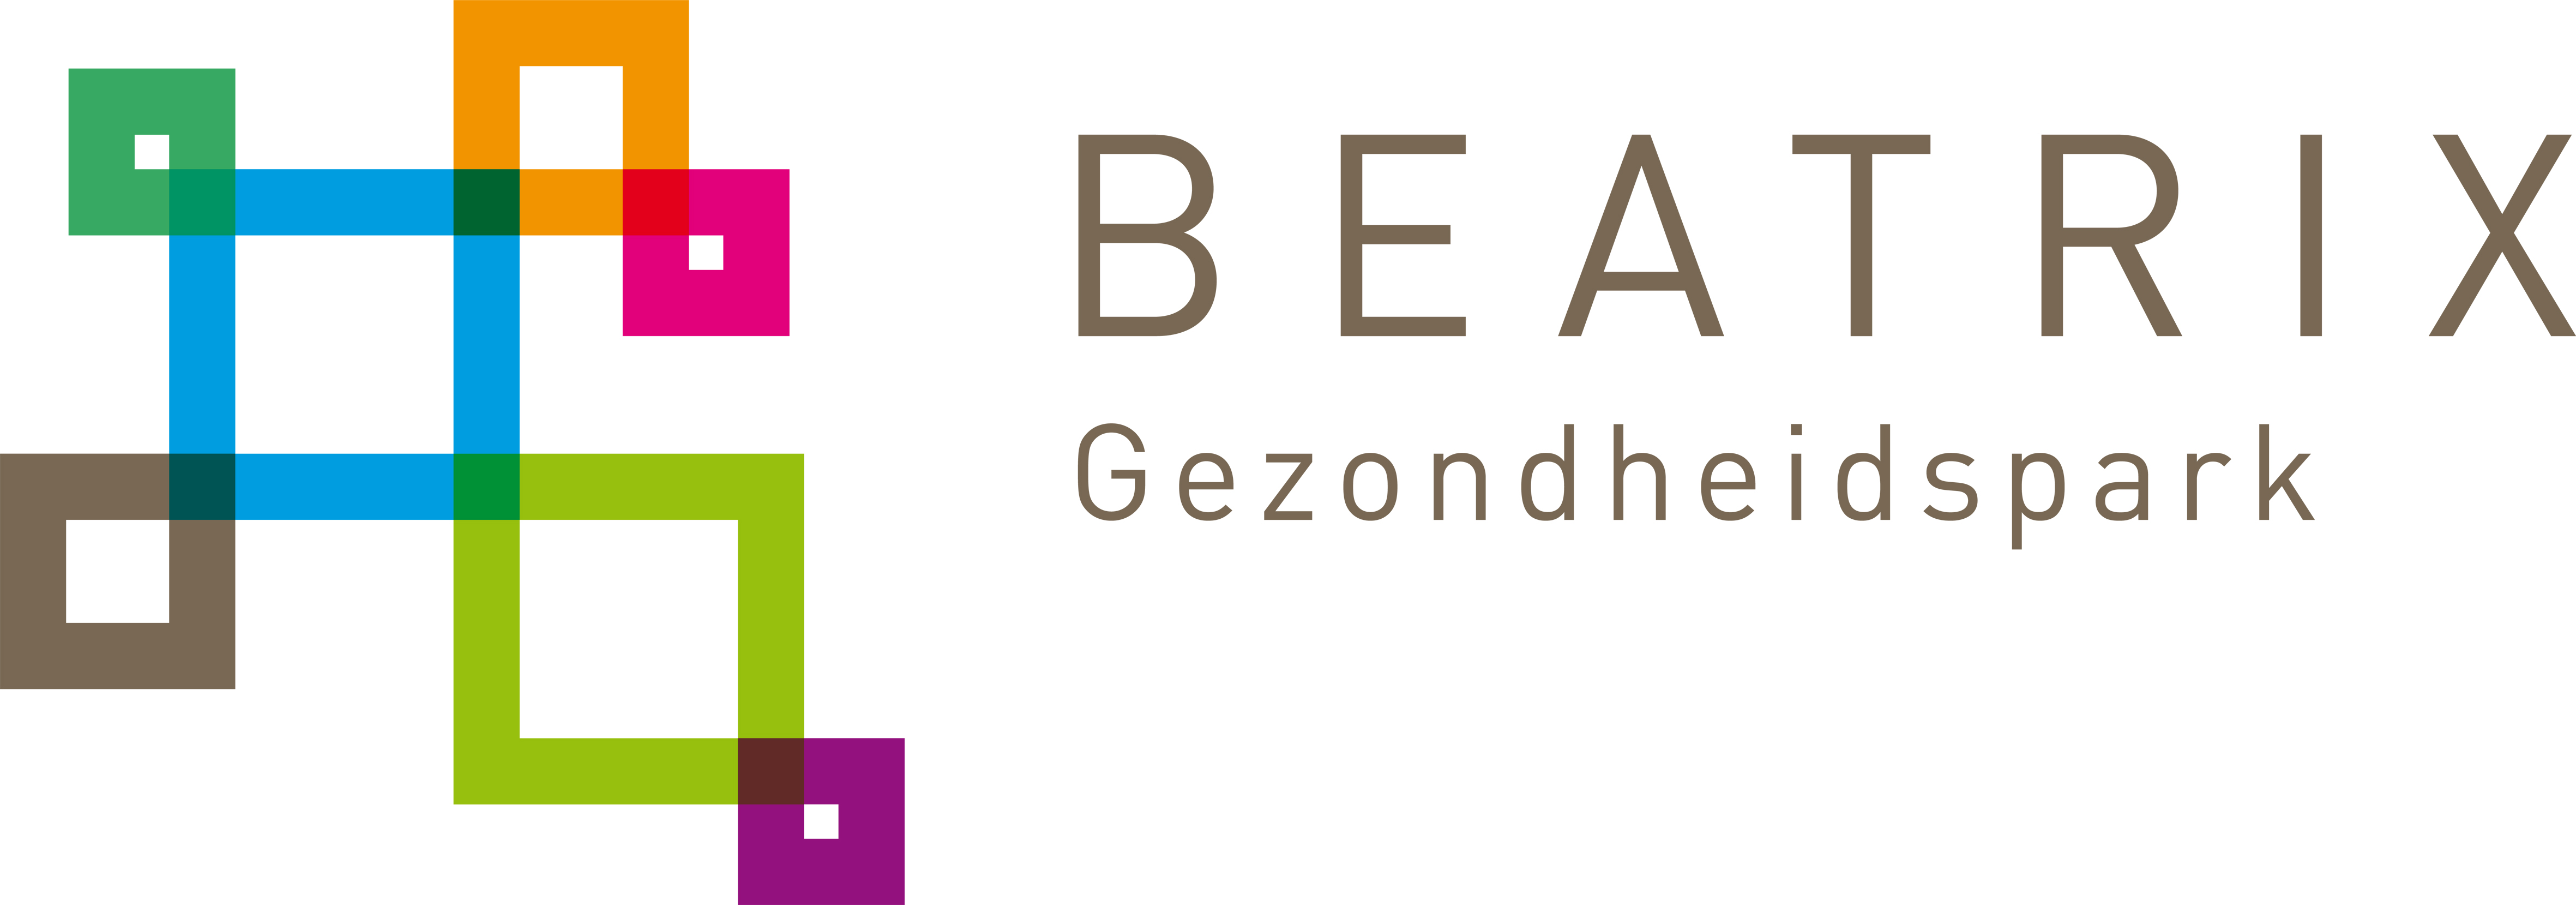 beatrix logo gezondheidspark groot